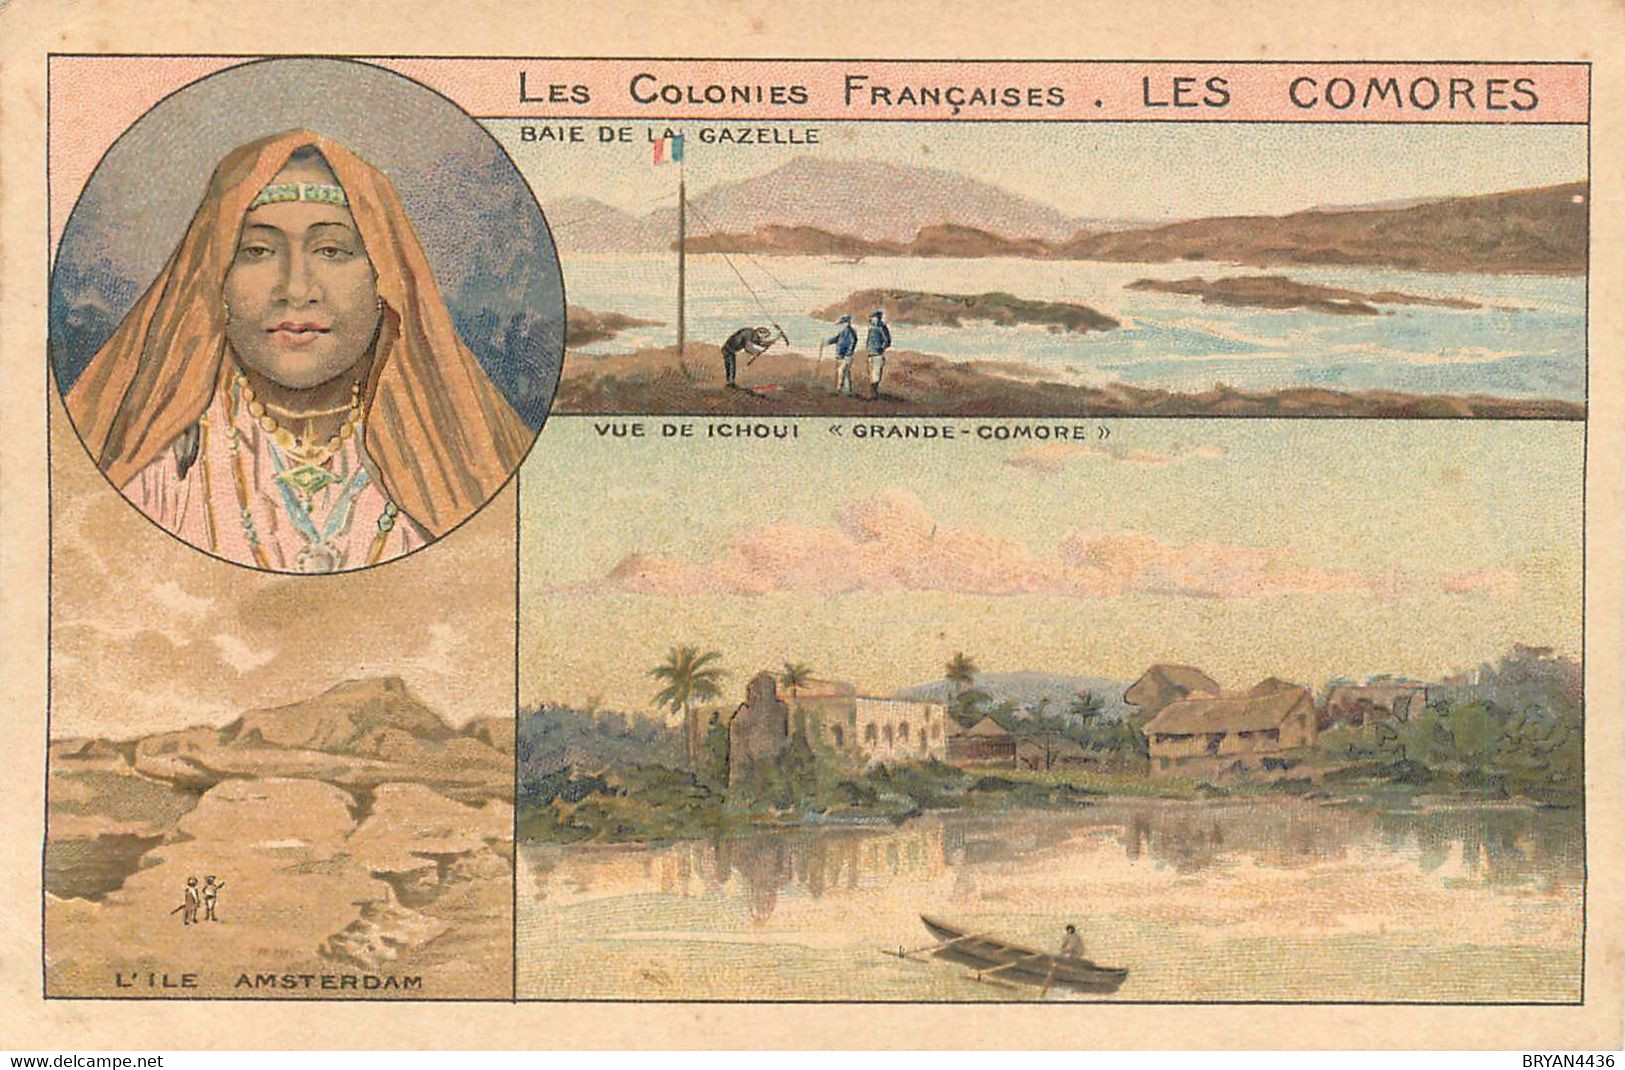 LES COMORES - COLONIE FRANCAISE - LIEUX & TYPES - CPA ILLUSTREE - TRES BON ETAT - Komoren